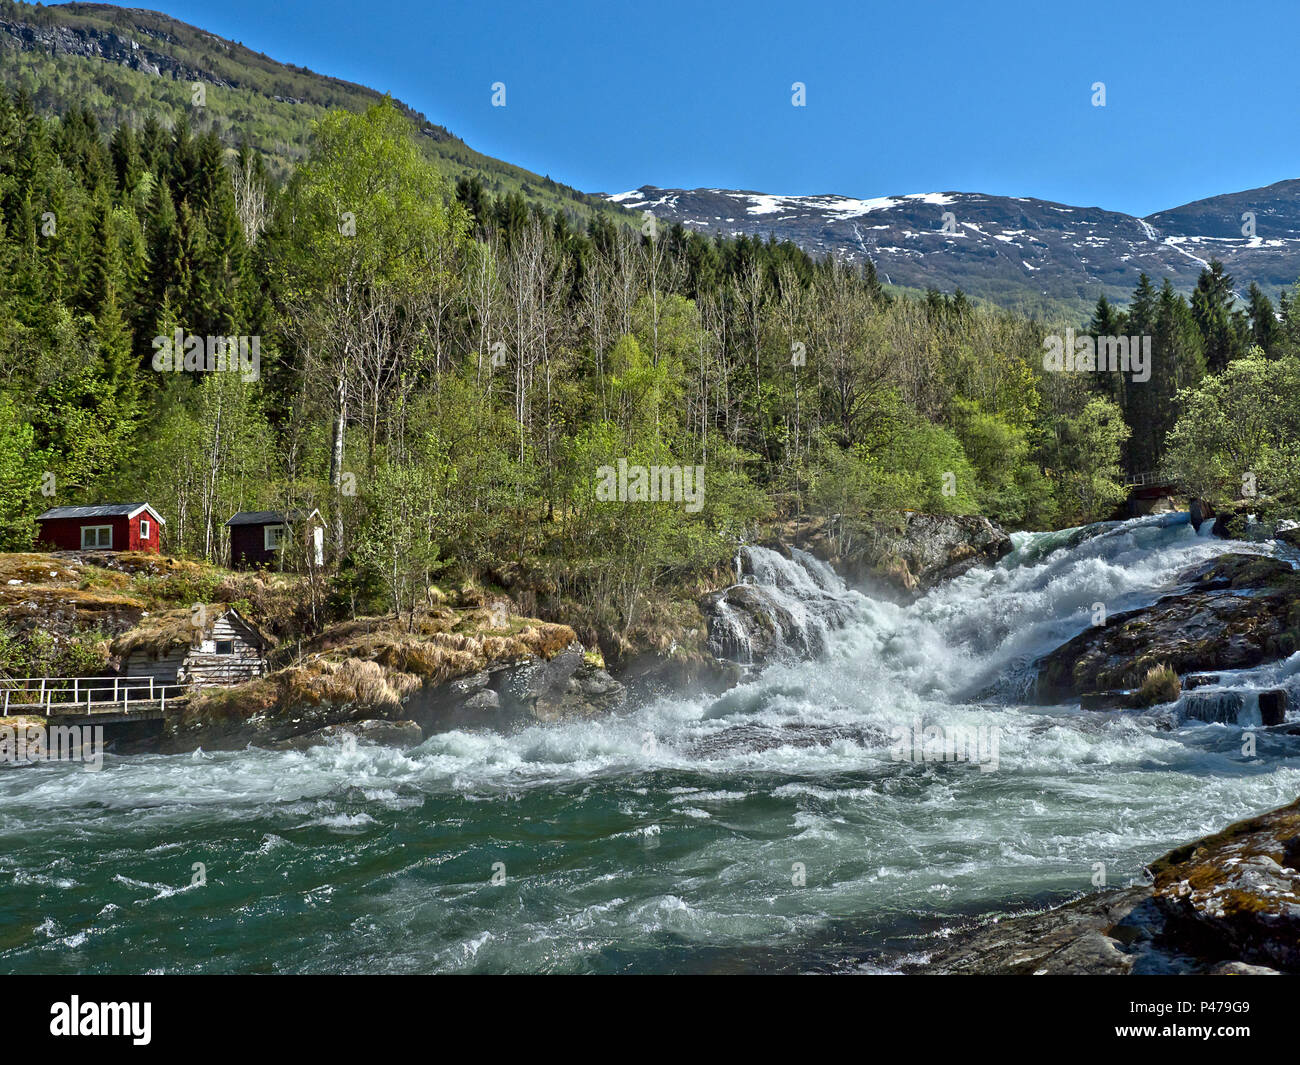 Norvegia, nei pressi di fiordi, nei pressi di Hellesylt, fiume con forte flusso e potenti cascate multiple, luce verde primavera, neve sulle cime dei fissaggi Foto Stock